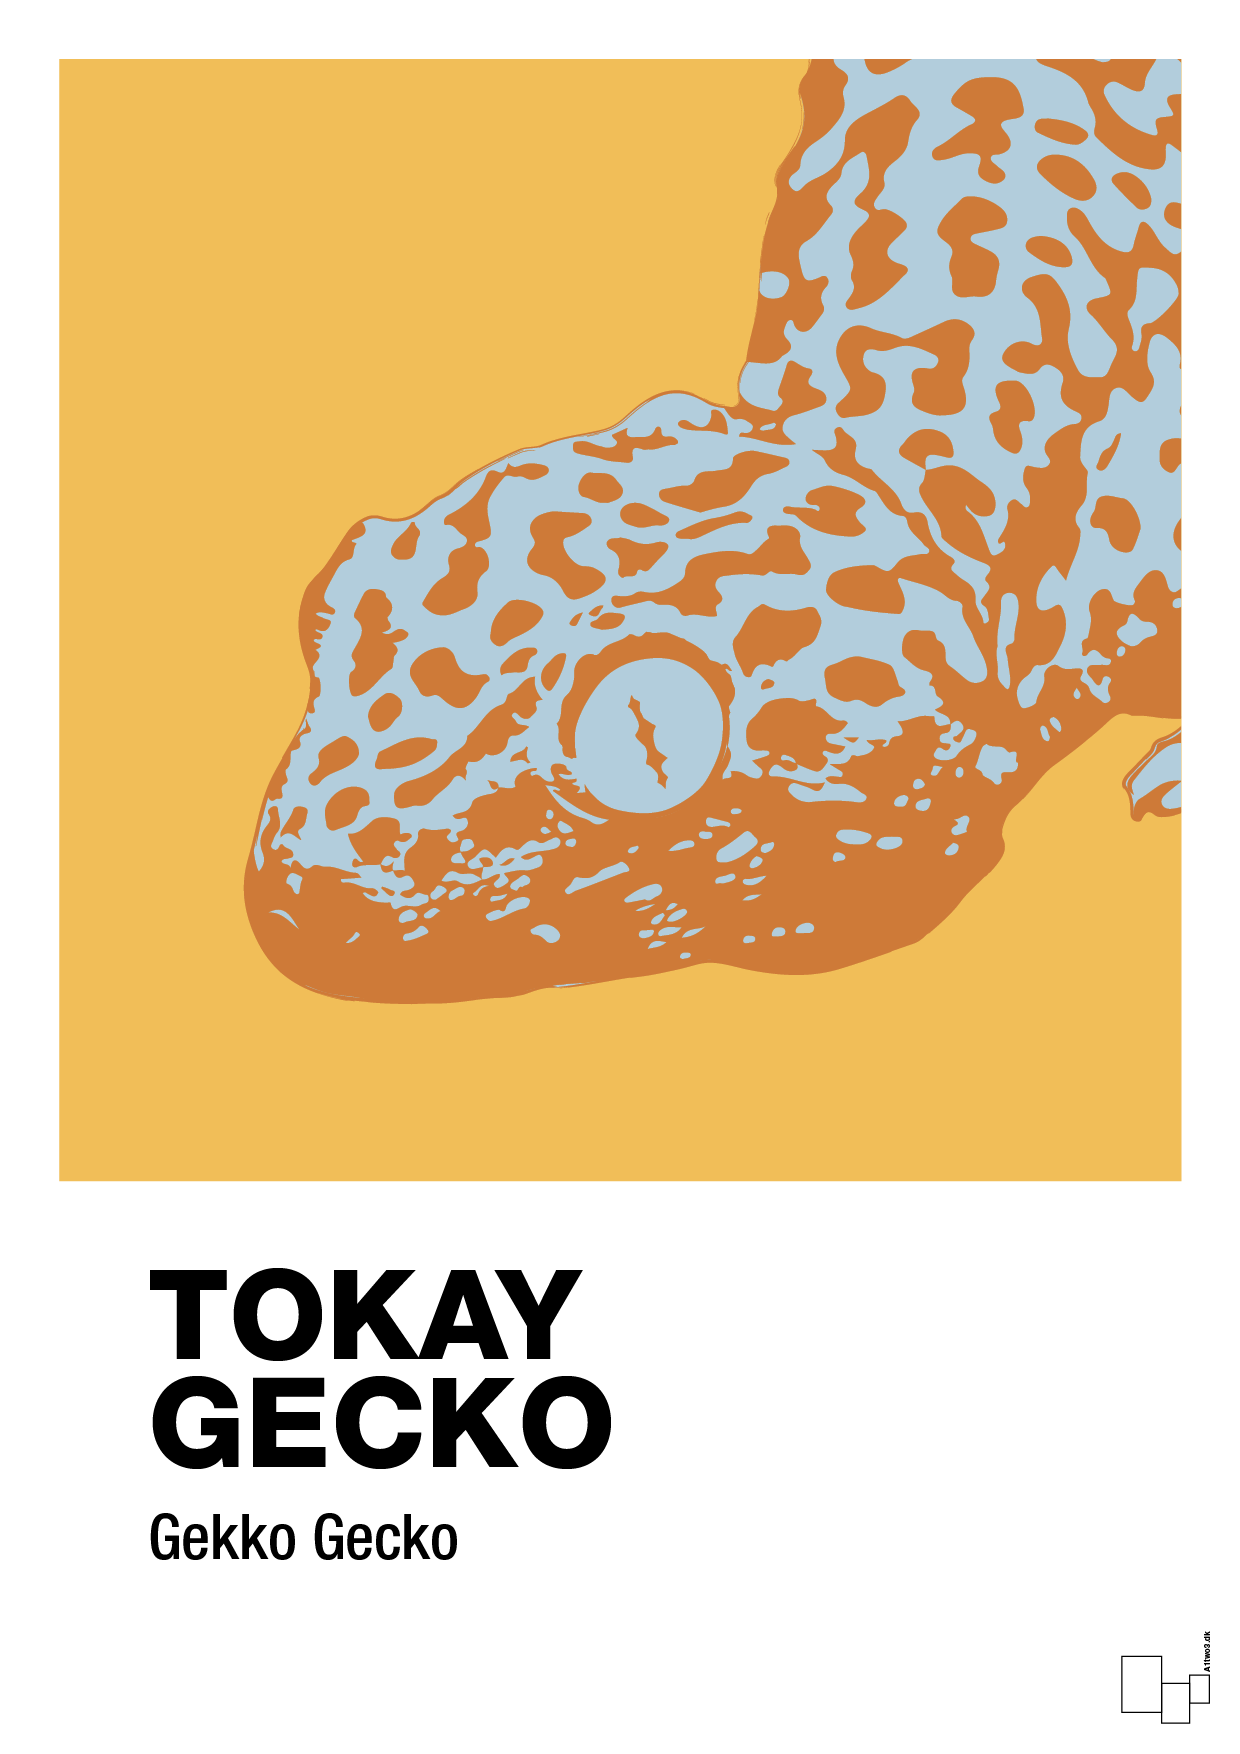 tokay gecko - Plakat med Videnskab i Honeycomb